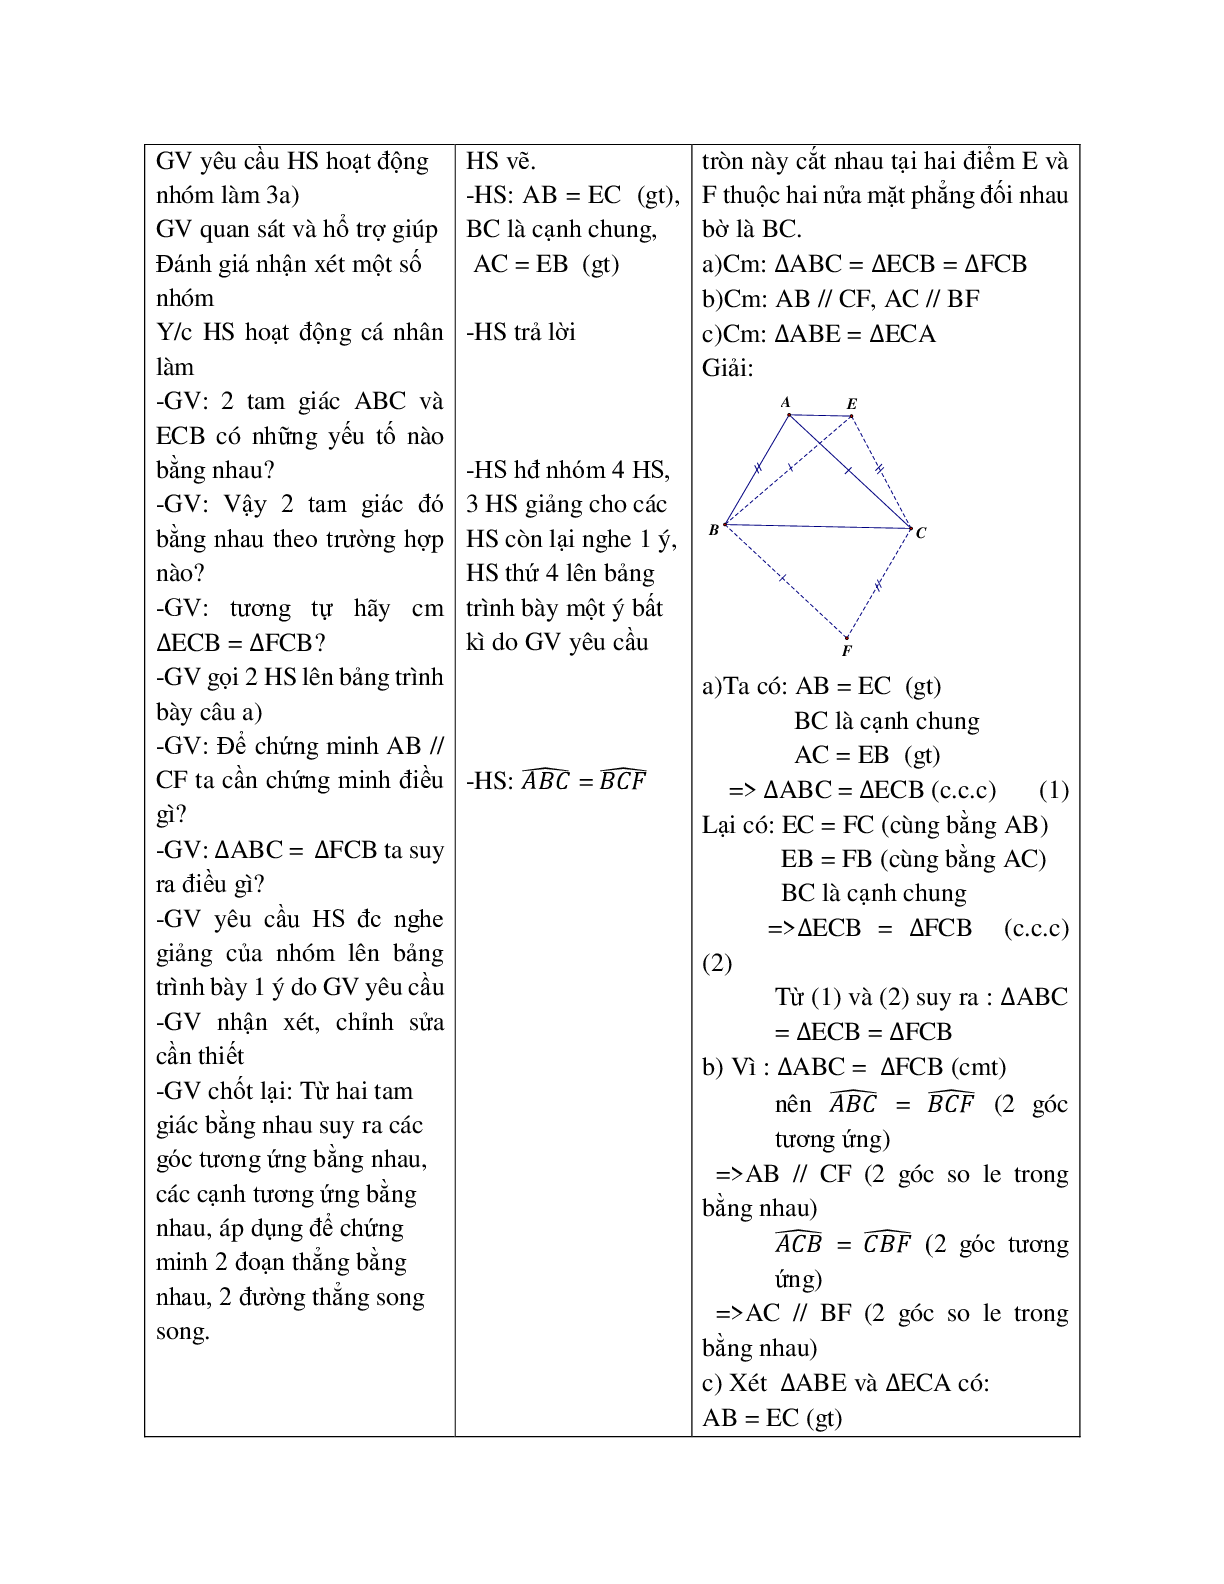 Giáo án Toán học 7 bài 3: Trường hợp bằng nhau thứ nhất của tam giác (c.c.c) (TT) hay nhất (trang 5)